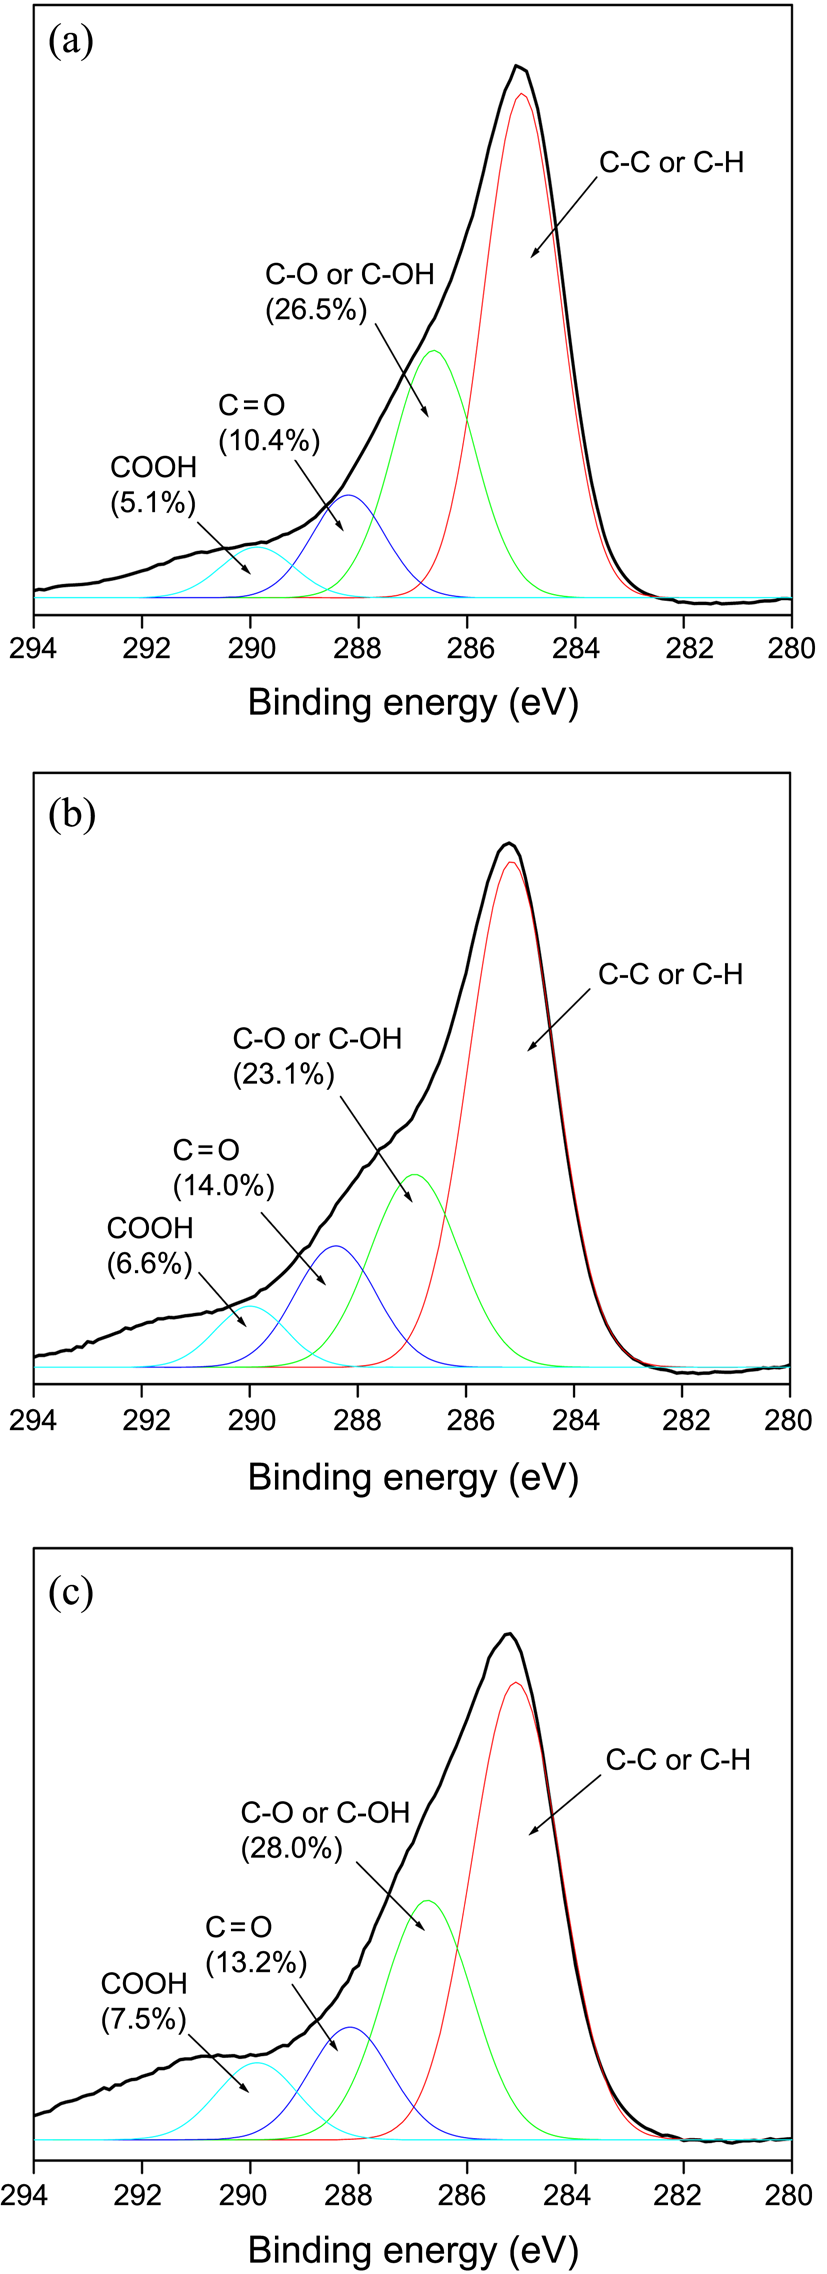 그림 56. 활성탄소 및 산성용액, 염기성용액으로 표면처리한 활성탄소의 고분해능 C1s 스펙트럼